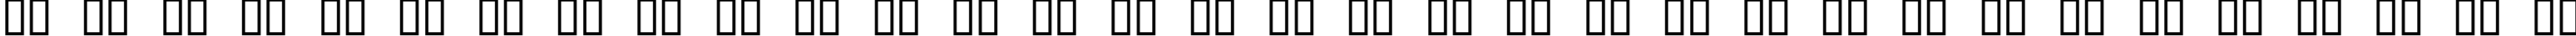 Пример написания русского алфавита шрифтом Rod